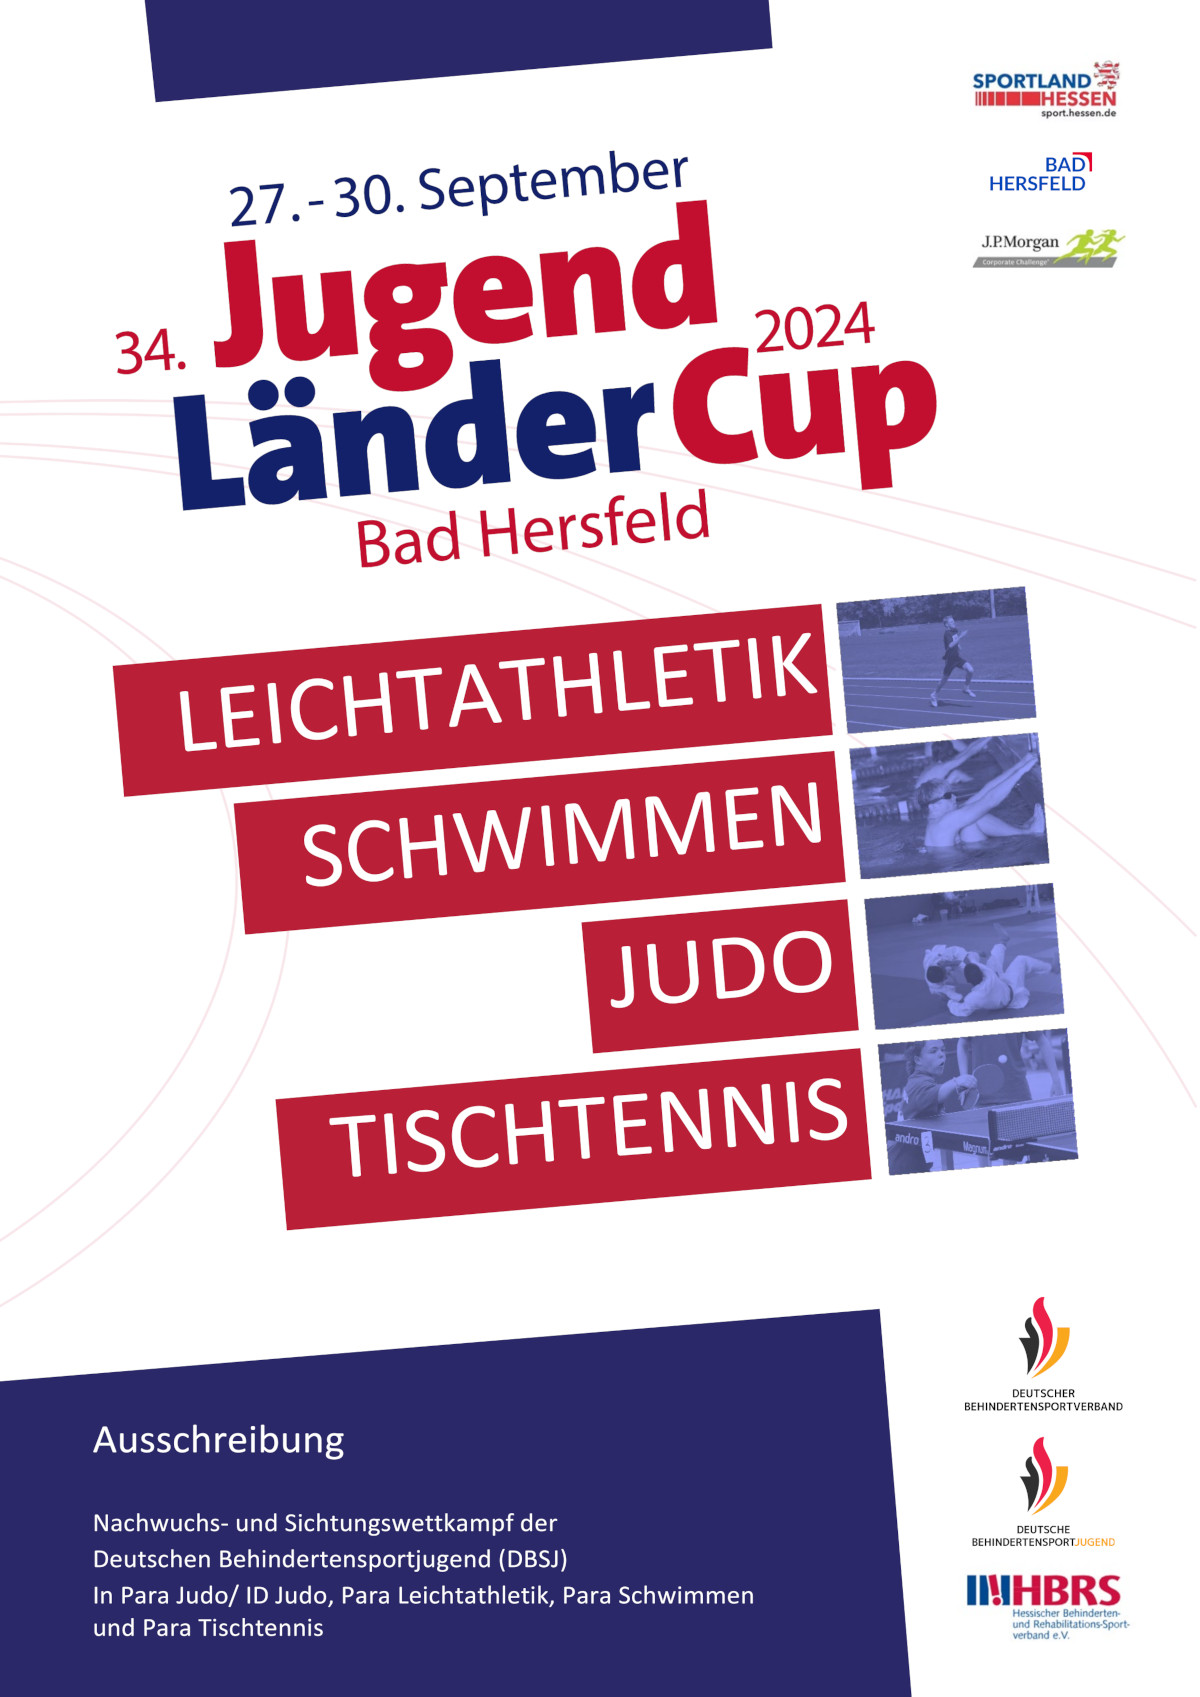 Plakat mir der Aufschrift "Jugend Länder-Cup 2024 Bad Hersfeld" und den Logos des DBS, der DBJ und des HBRS - ohne Foto oder Bilder.